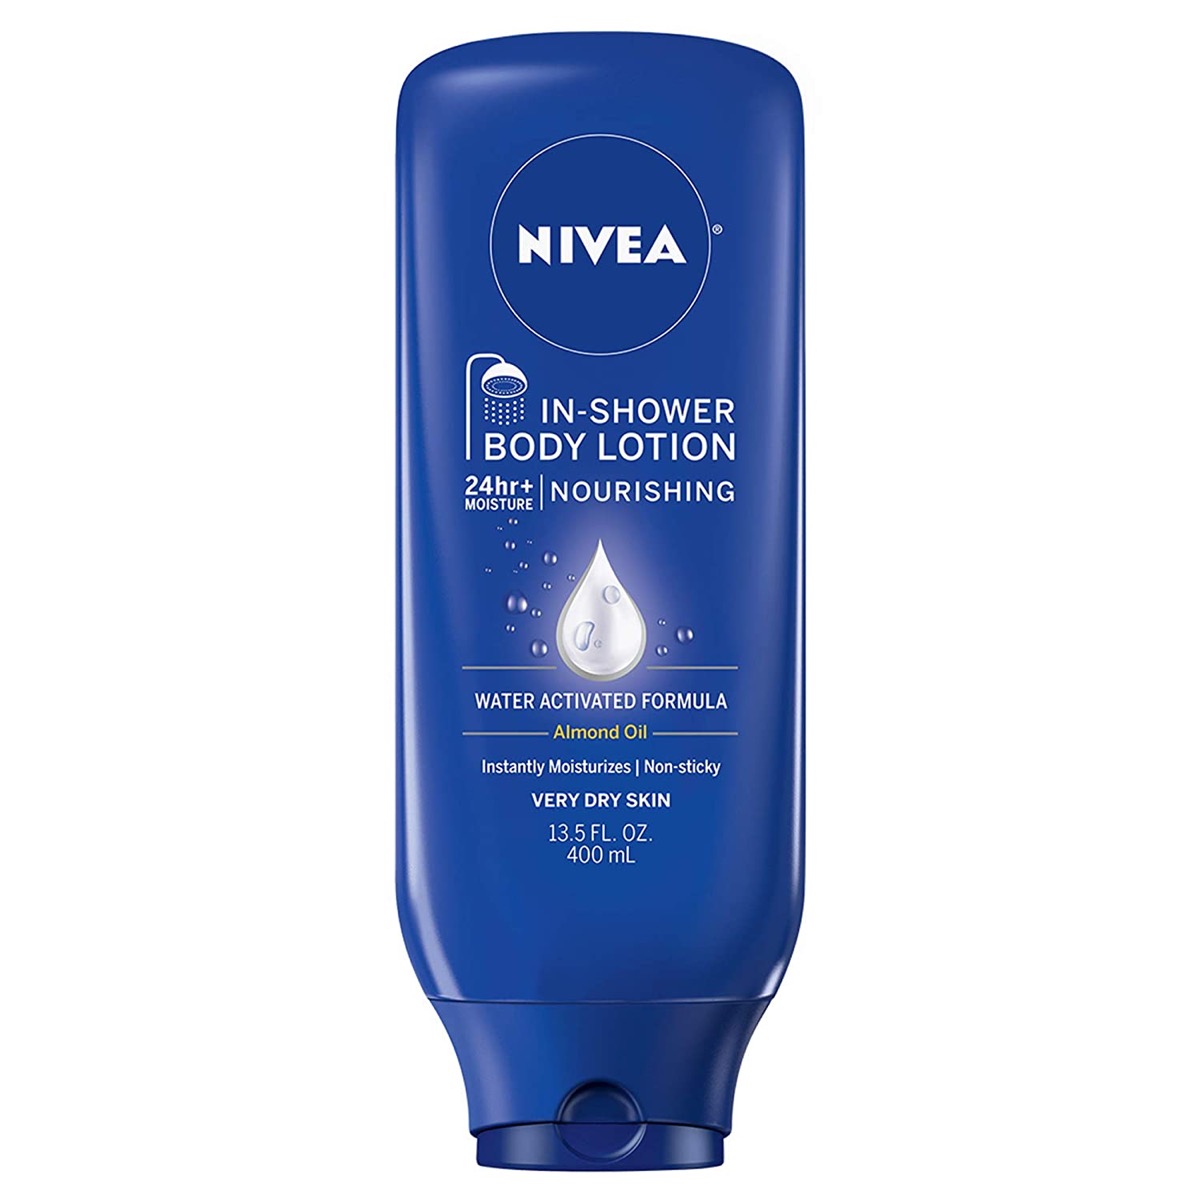 Blue Nivea in shower body lotion bottle